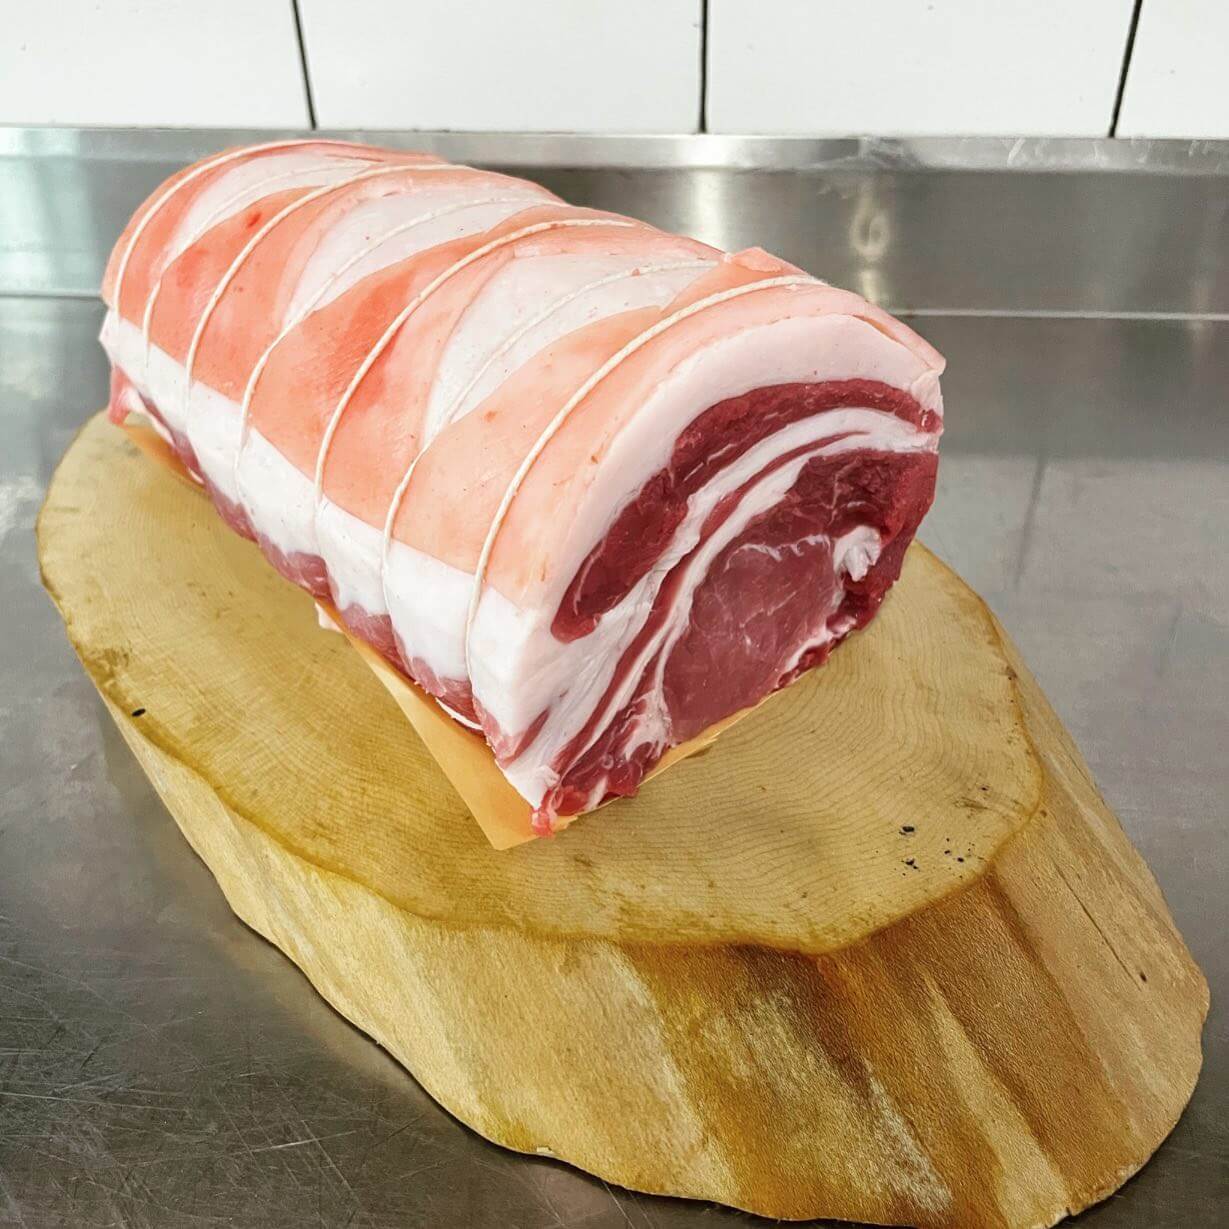 Tamworth Pig meat - Pork Roast